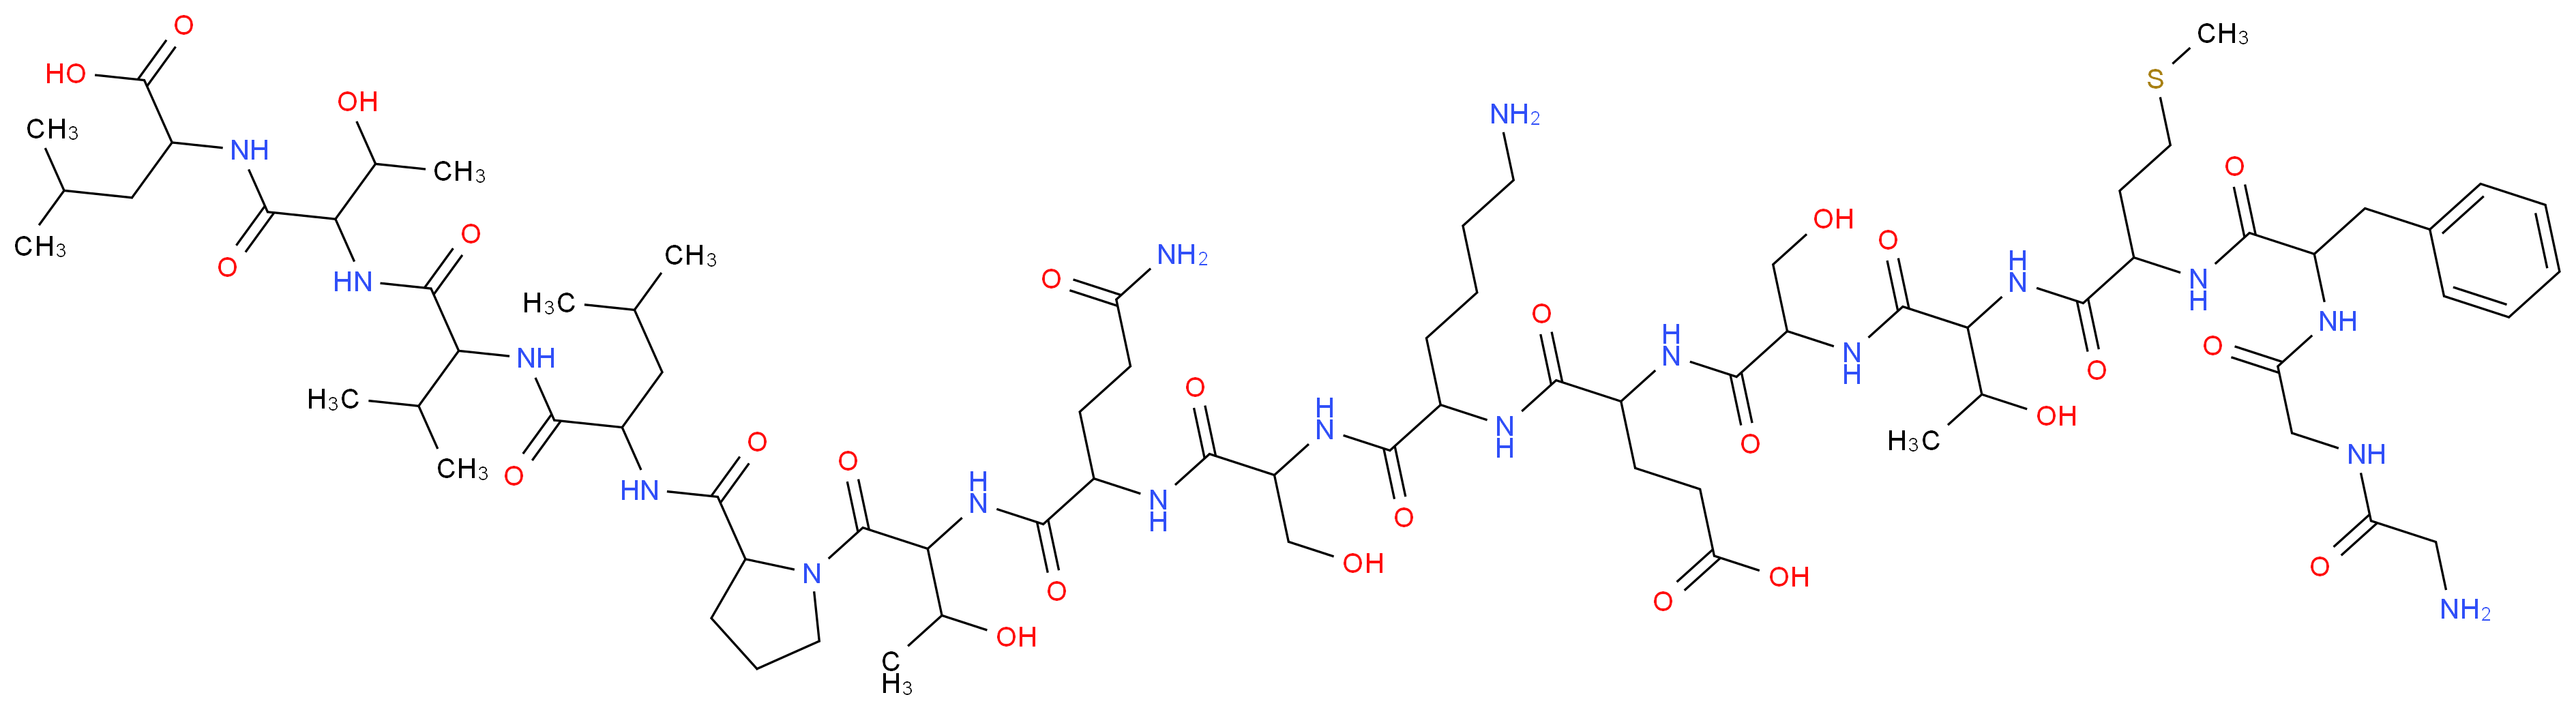 4-[(5-amino-1-{[1-({3-carbamoyl-1-[(1-{2-[(1-{[1-({1-[(1-carboxy-3-methylbutyl)carbamoyl]-2-hydroxypropyl}carbamoyl)-2-methylpropyl]carbamoyl}-3-methylbutyl)carbamoyl]pyrrolidin-1-yl}-3-hydroxy-1-oxobutan-2-yl)carbamoyl]propyl}carbamoyl)-2-hydroxyethyl]carbamoyl}pentyl)carbamoyl]-4-{2-[2-(2-{2-[2-(2-aminoacetamido)acetamido]-3-phenylpropanamido}-4-(methylsulfanyl)butanamido)-3-hydroxybutanamido]-3-hydroxypropanamido}butanoic acid_分子结构_CAS_67810-56-4